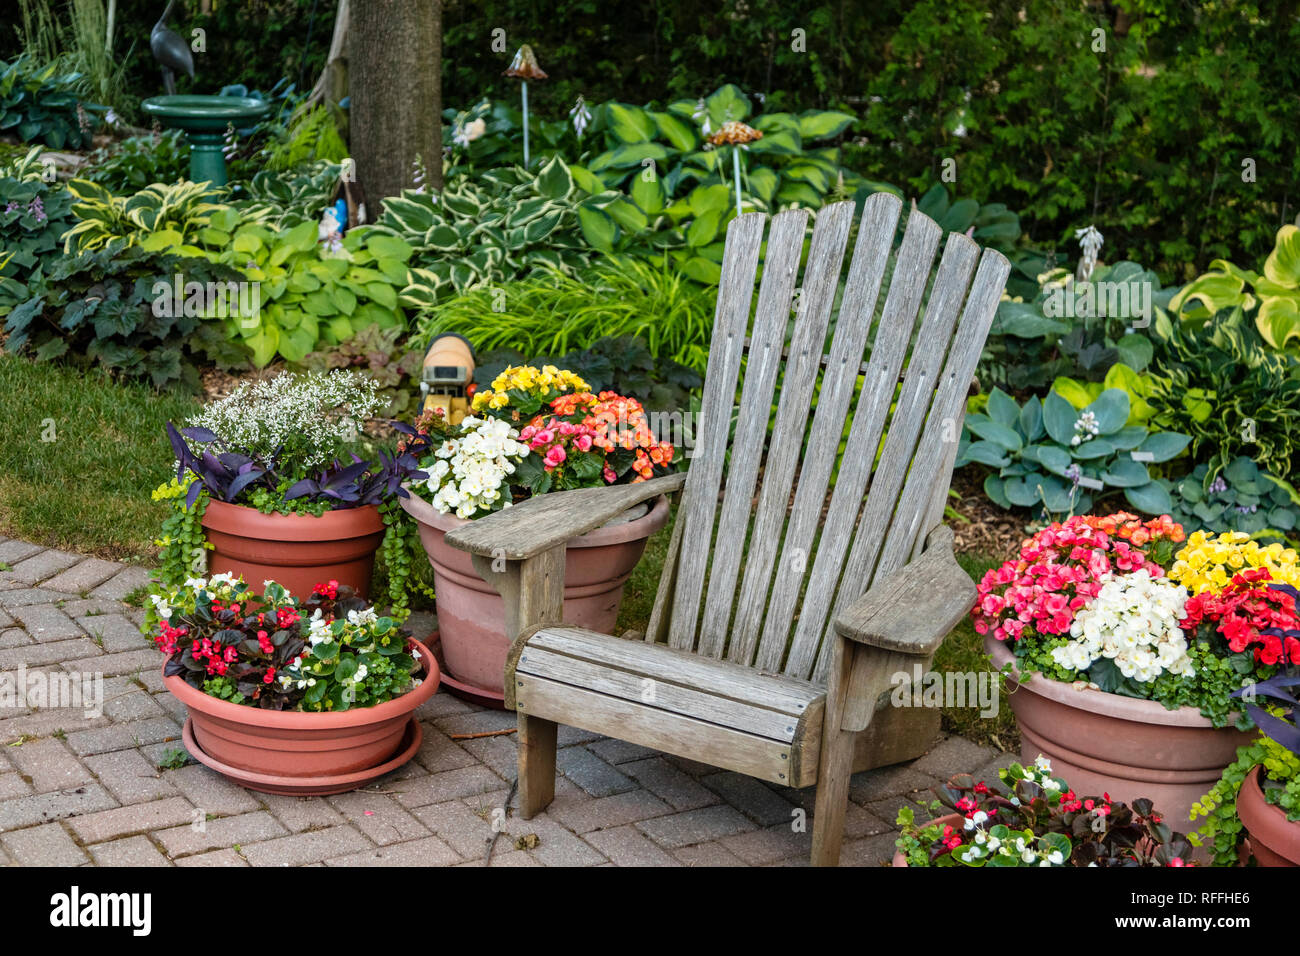 Une scène de jardin avec beaucoup de fleurs en pot et une chaise rustique. Banque D'Images